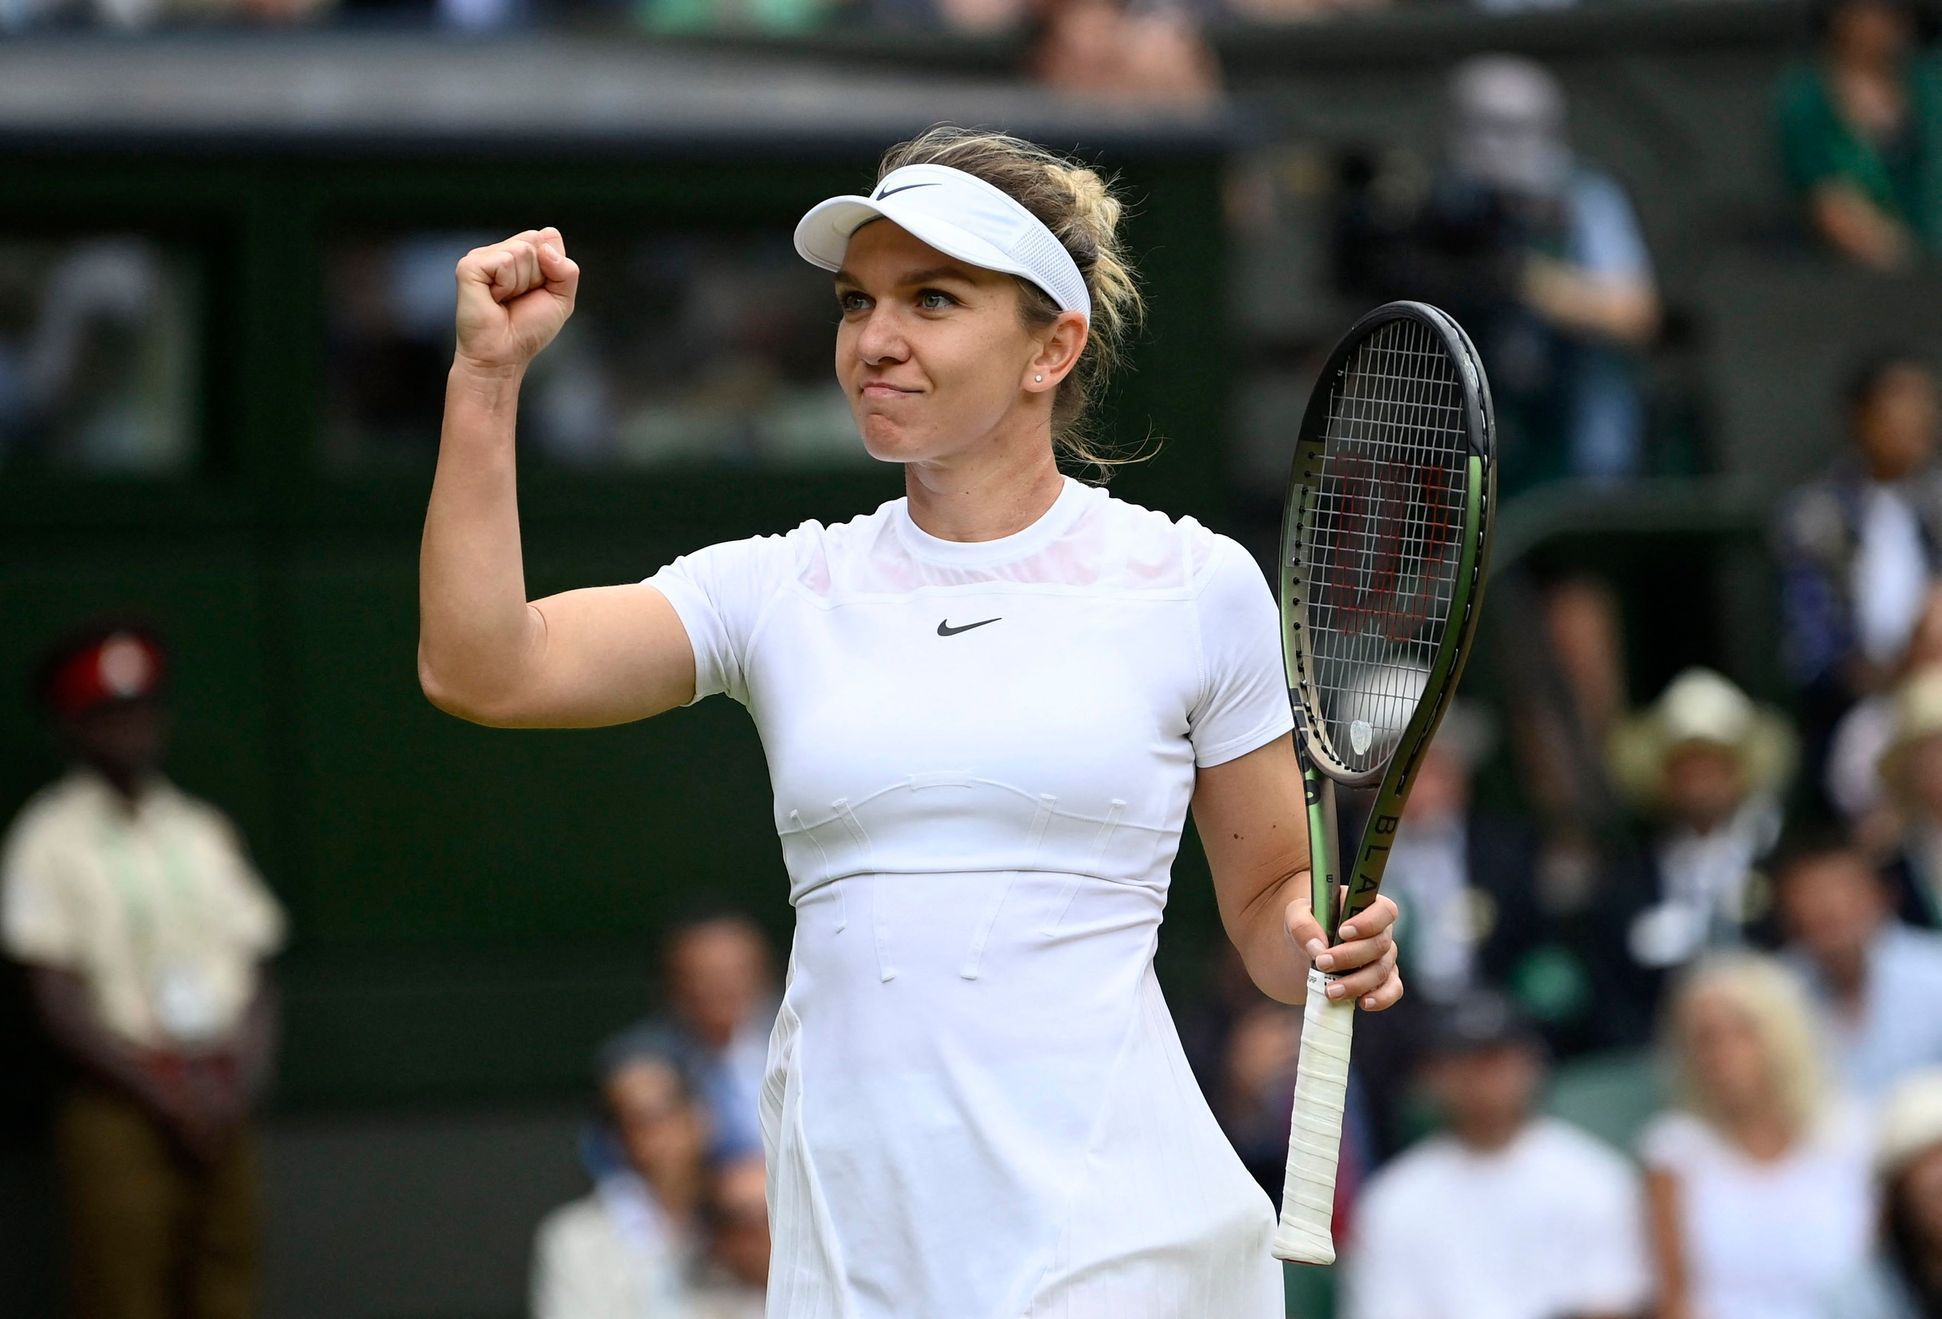 Simona Halepová postoupila do semifinále Wimbledonu 2022